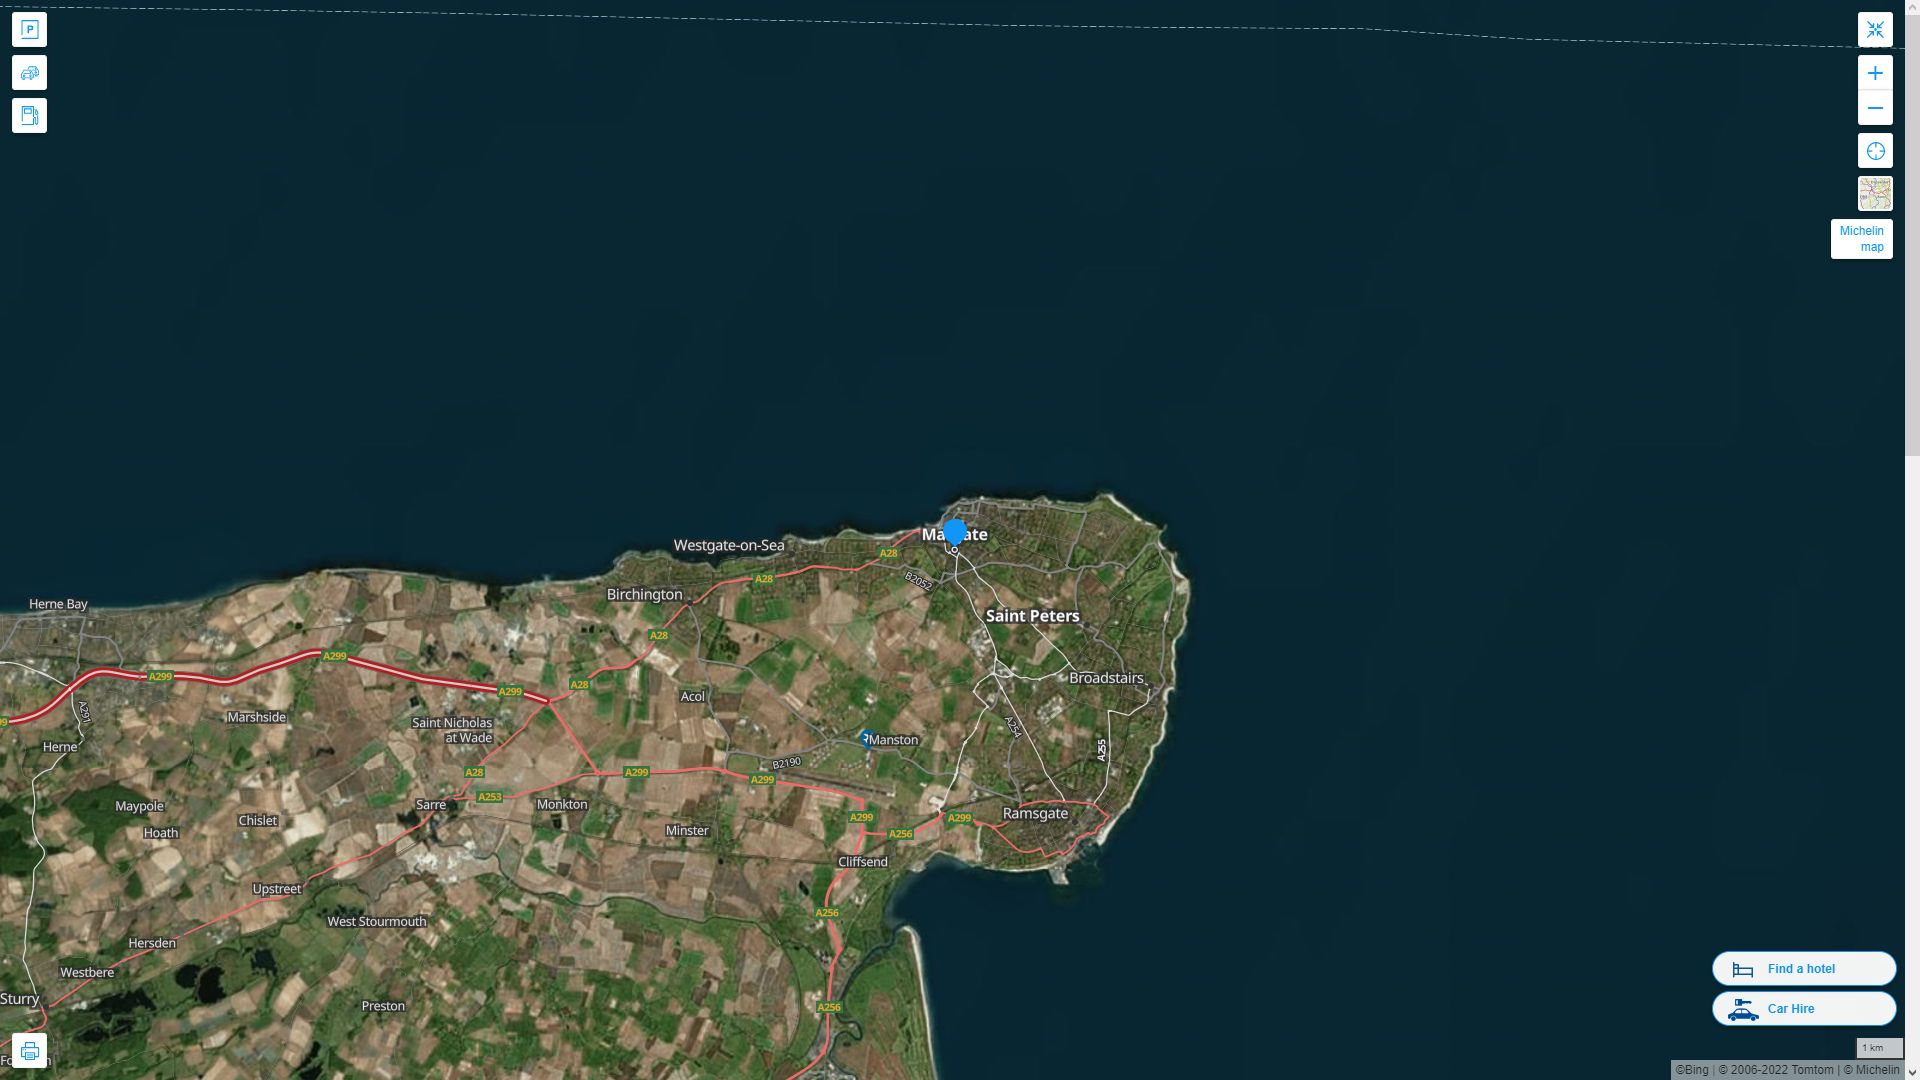 Margate Royaume Uni Autoroute et carte routiere avec vue satellite